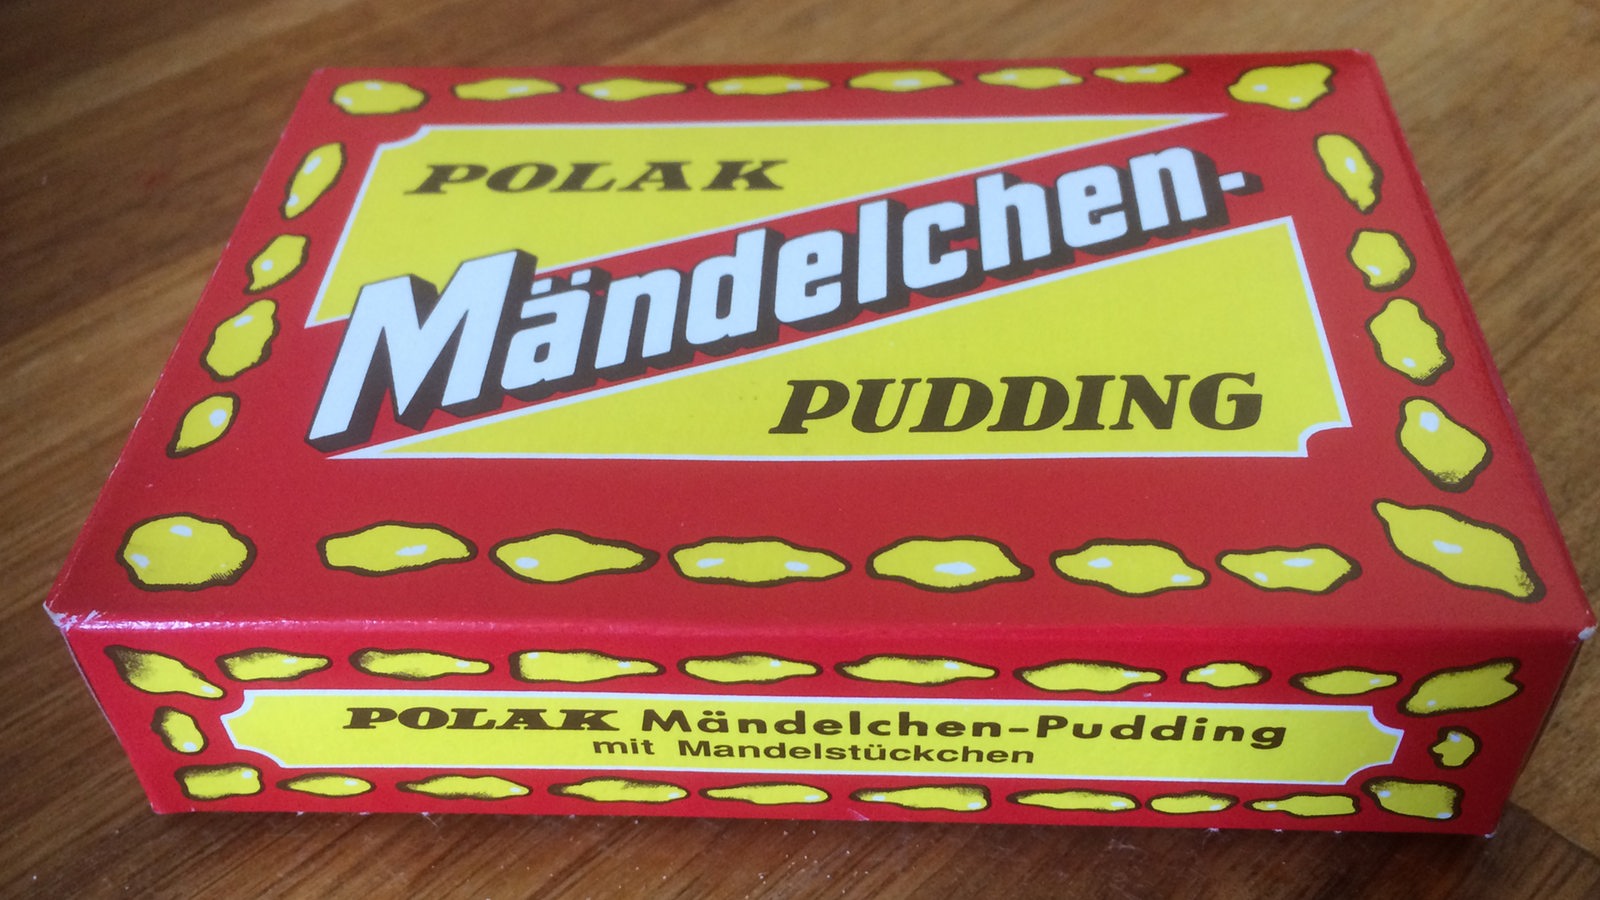 Polak Mändelchen-Pudding aus Weener